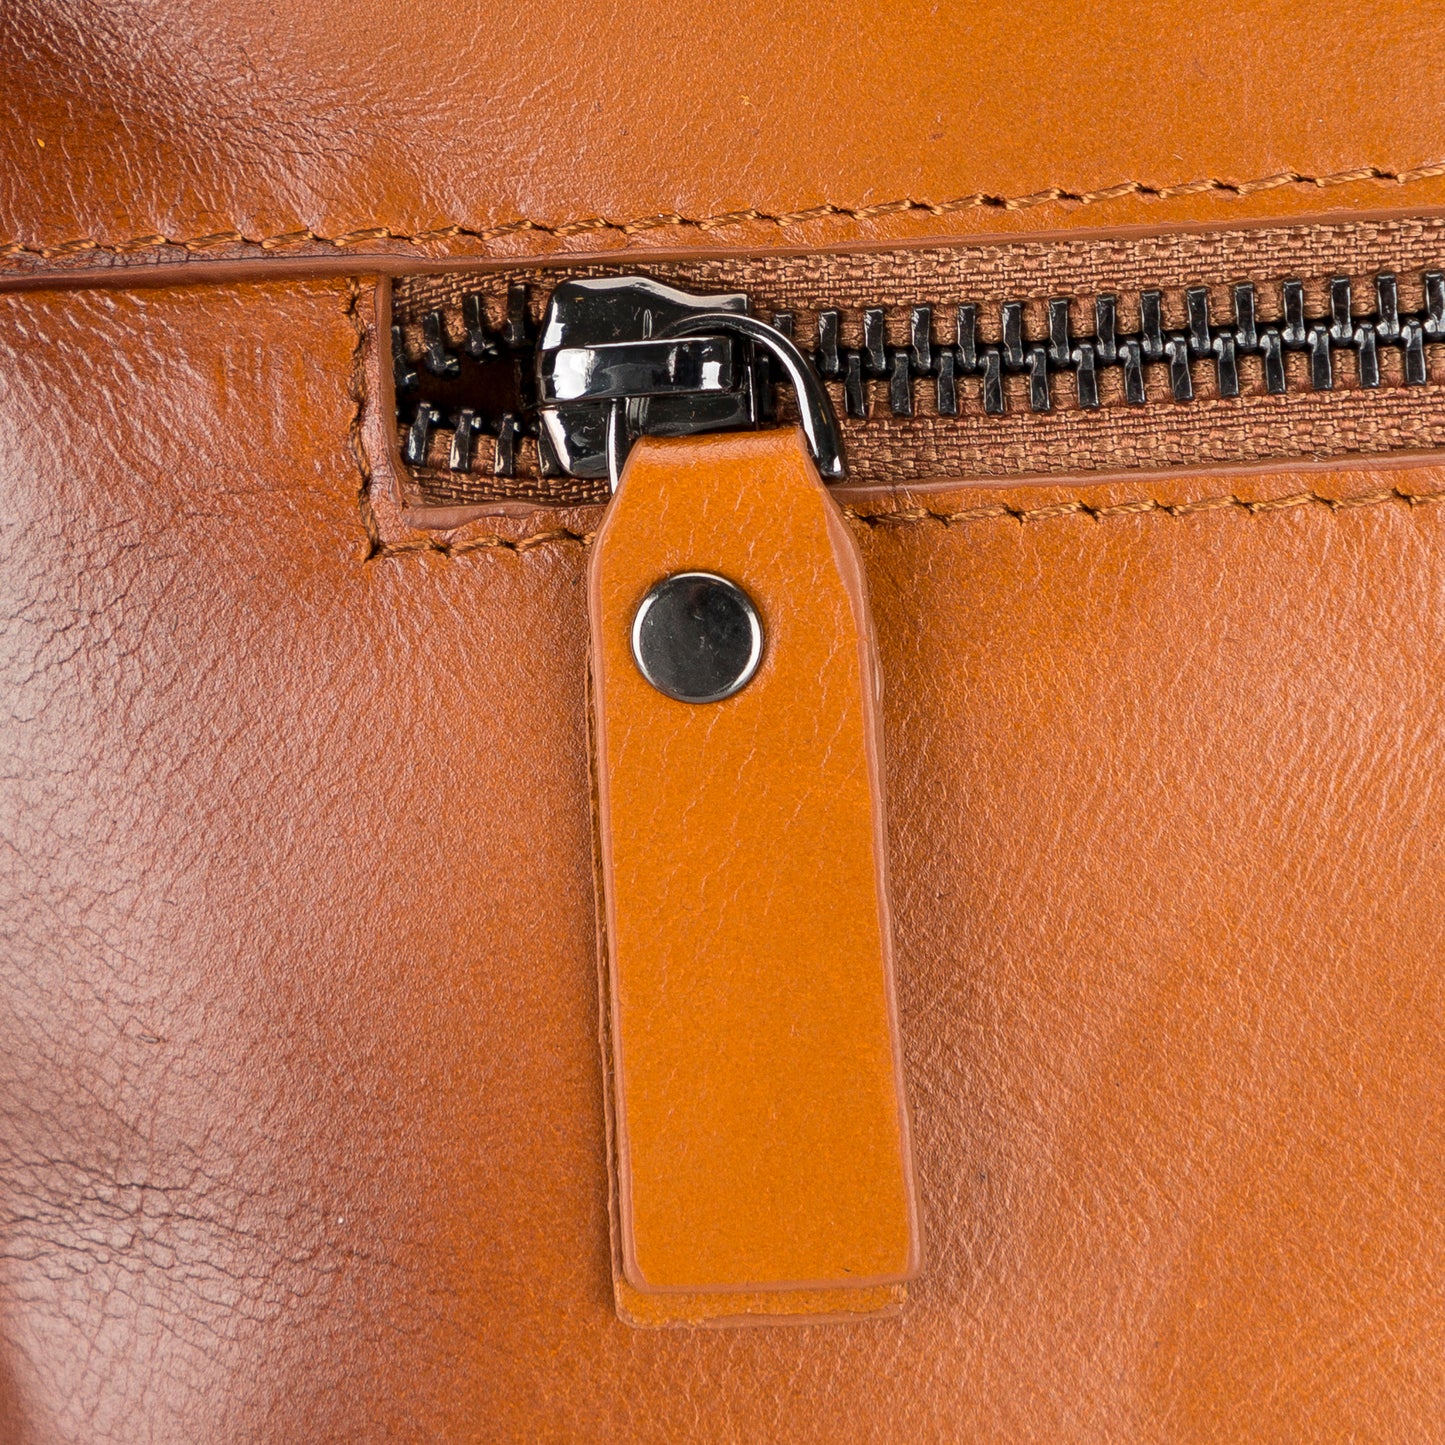 Leather Notebook/Macbook Bag 14" - Rustic Brown